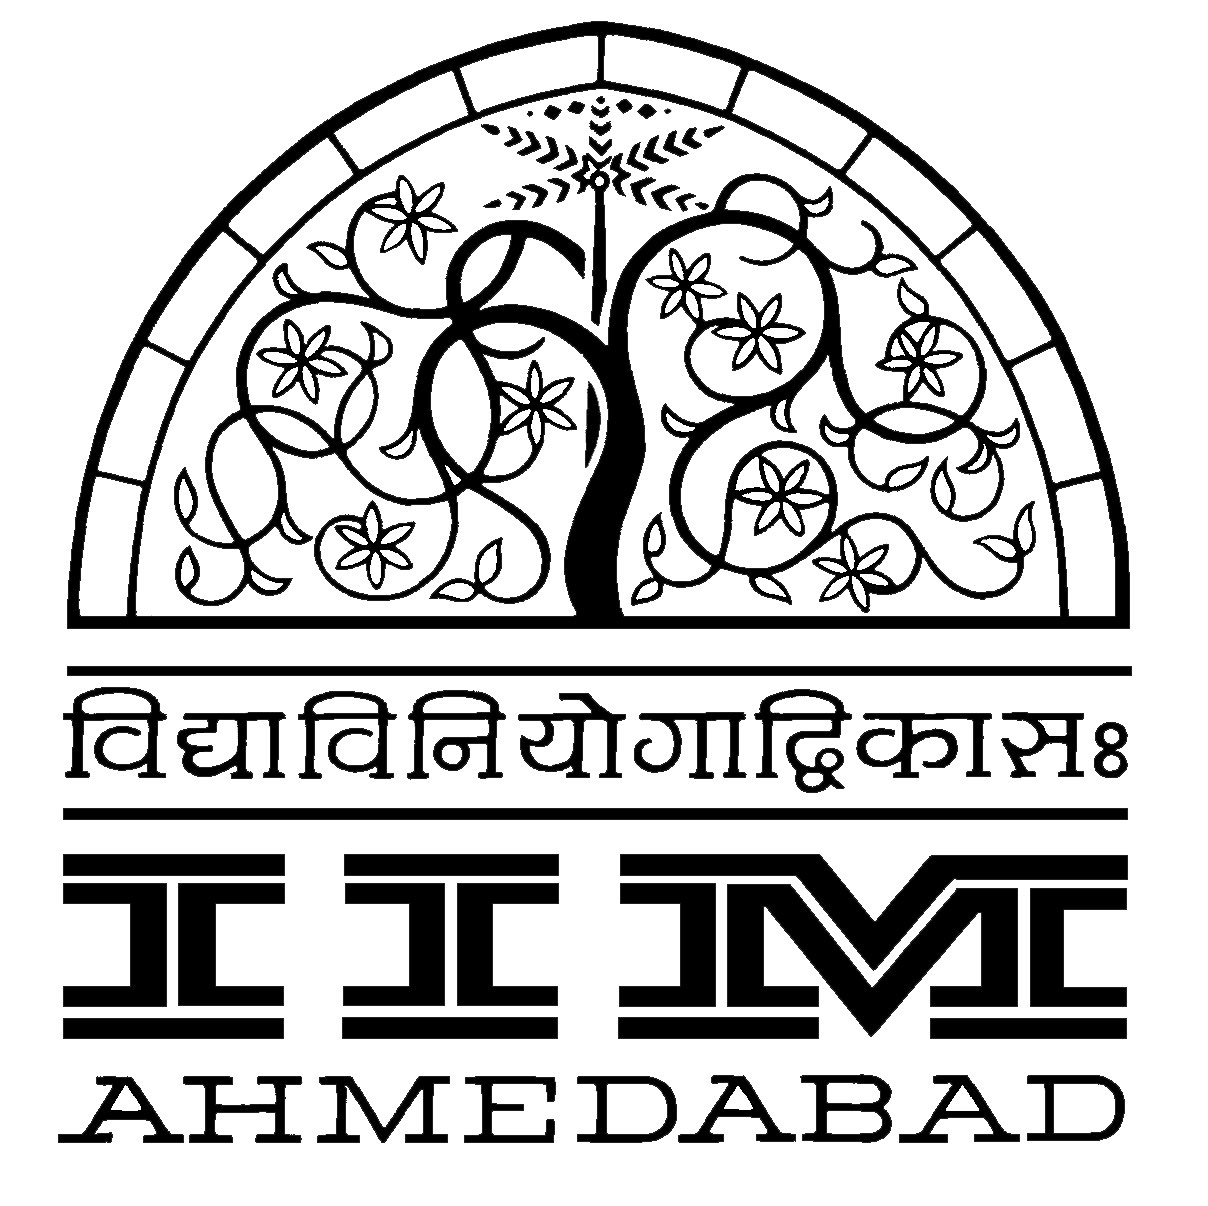 इंडियन इंस्टीट्यूट ऑफ मैनेजमेंट-अहमदाबाद के लोगो बदलने के विचार पर विरोध कर रहे 45 प्रोफेसर।